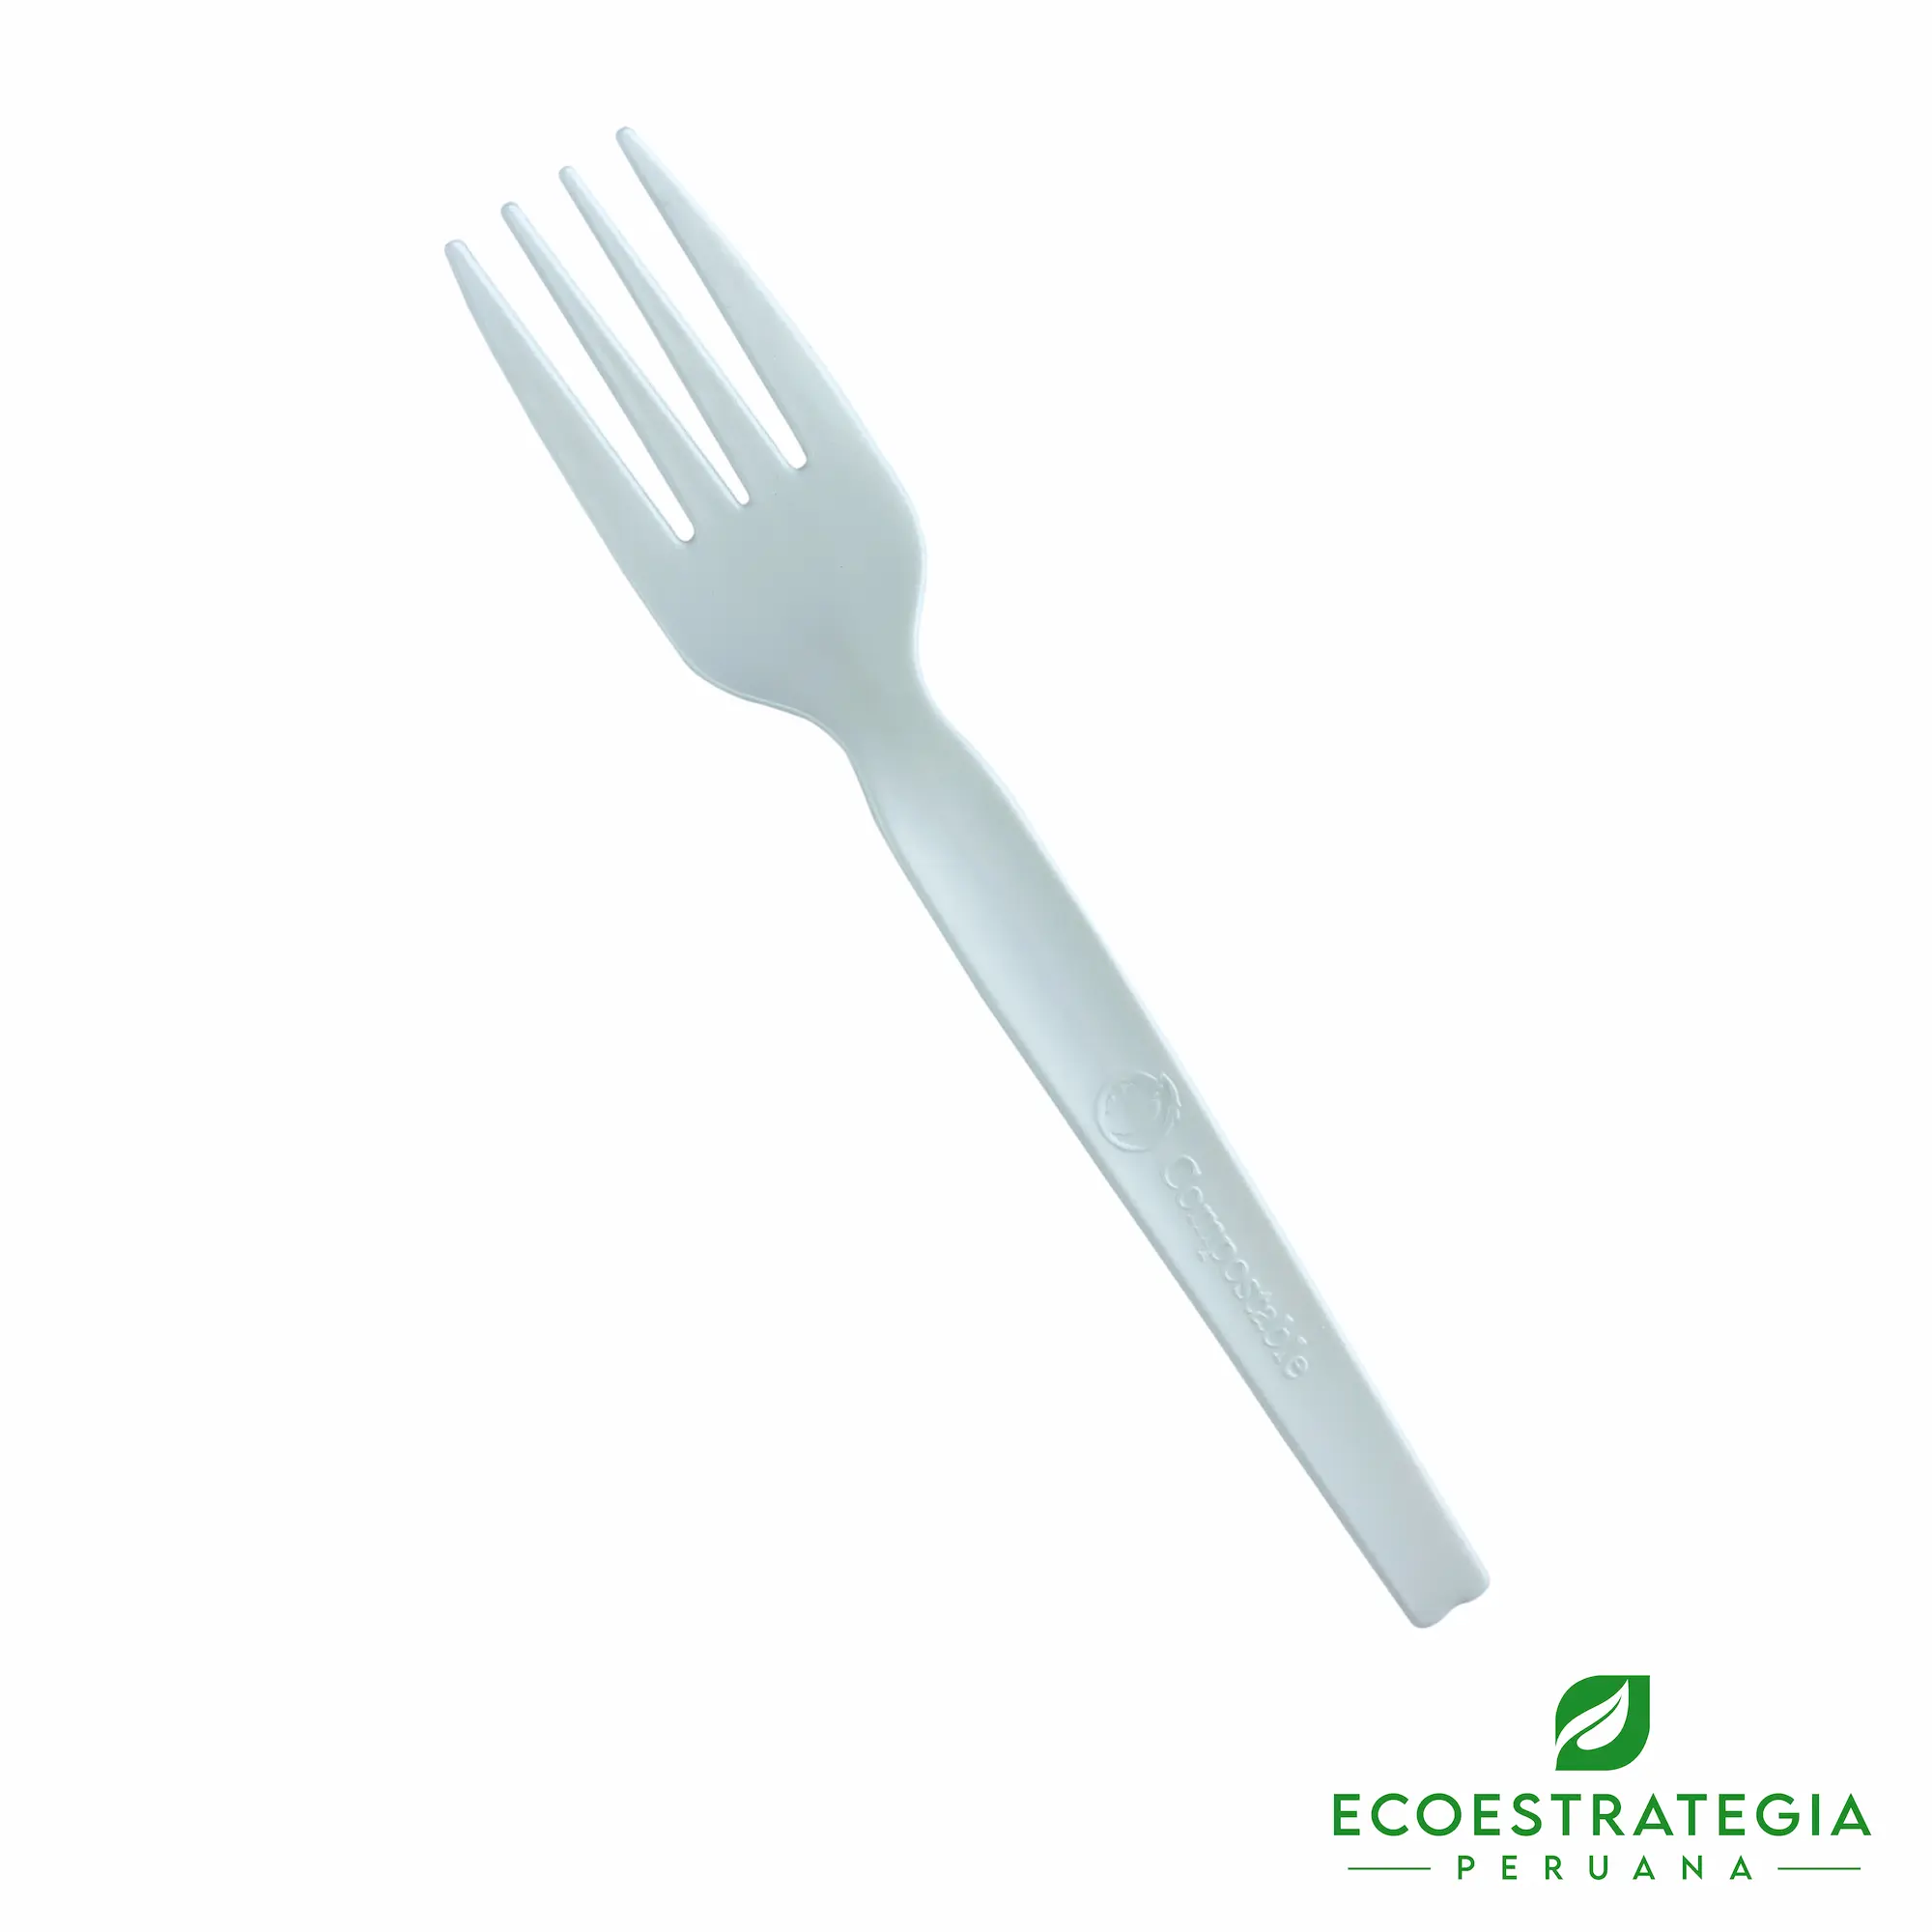 El tenedor biodegradable EP-T es un cubierto descartable ecologico y desechable hechos a base de fecula de maíz